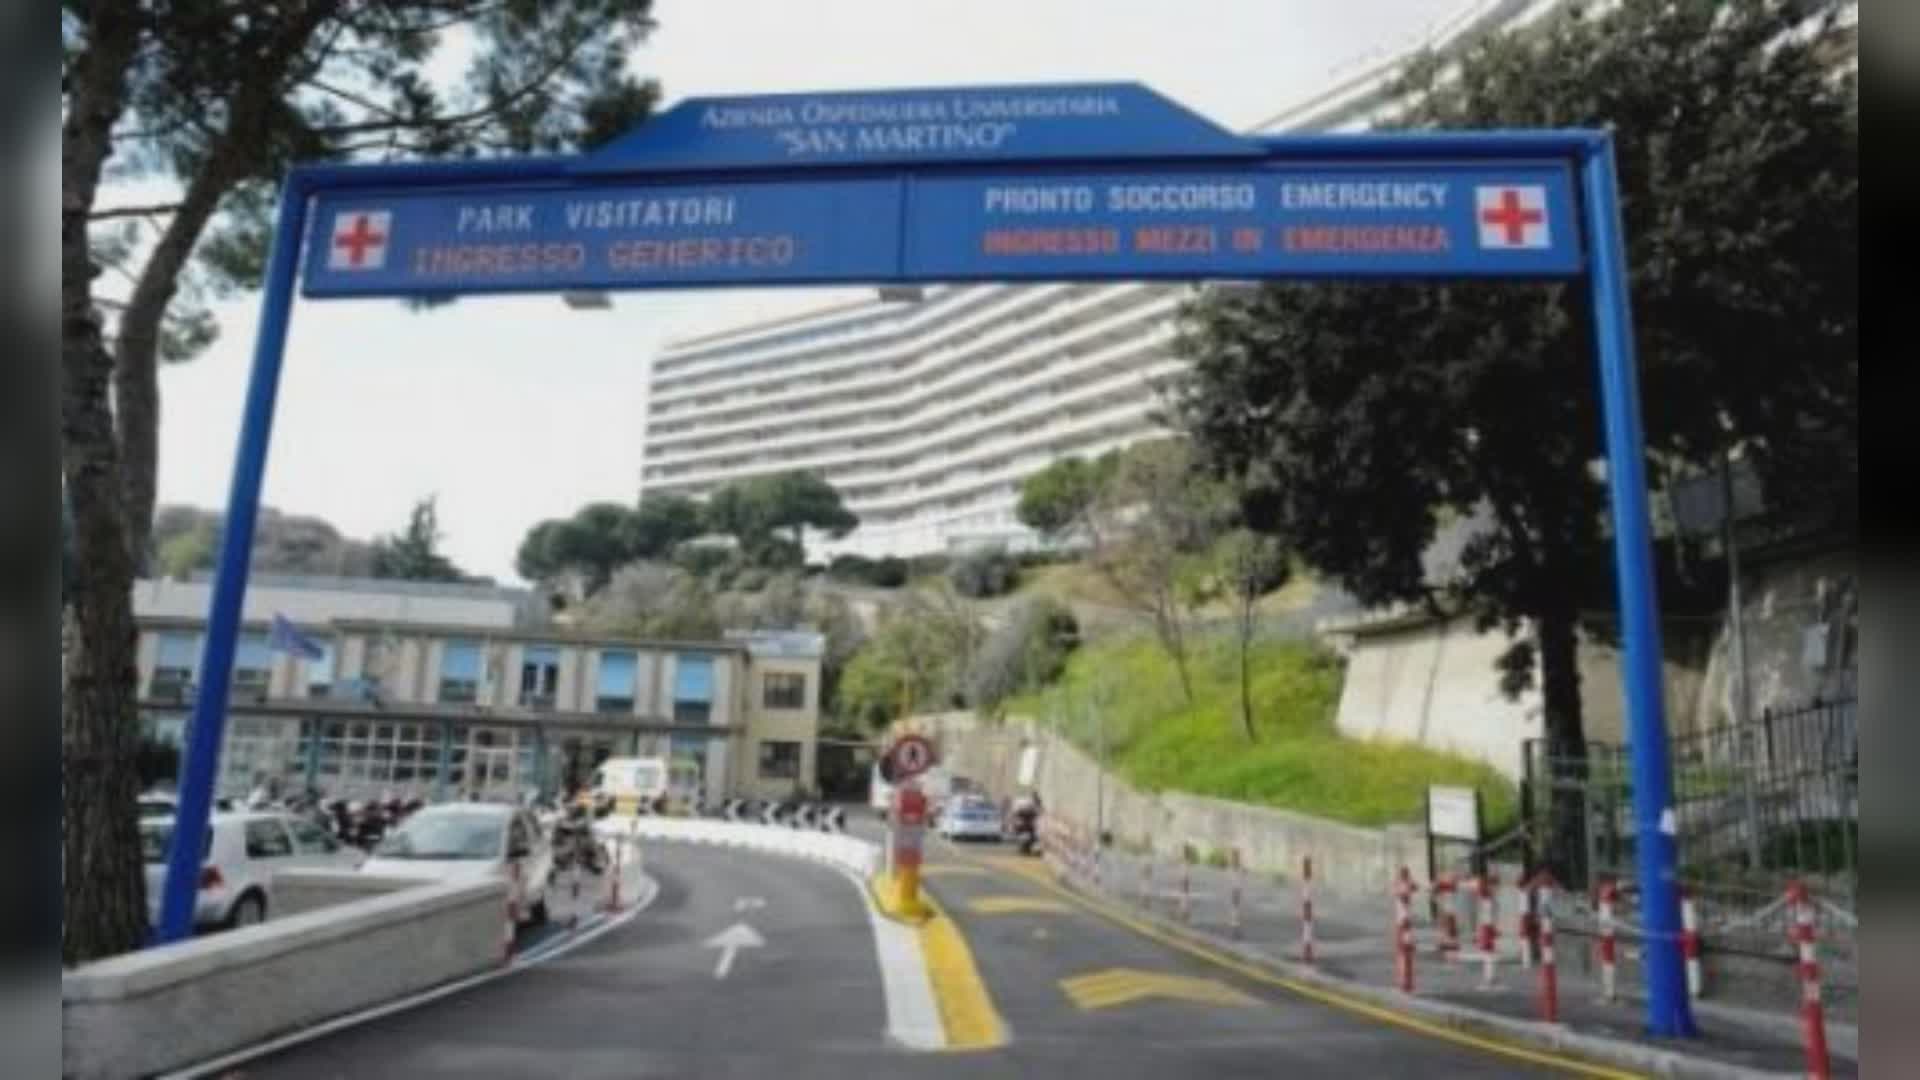 Genova, pronto soccorso San Martino: riaperto accesso accompagnatori